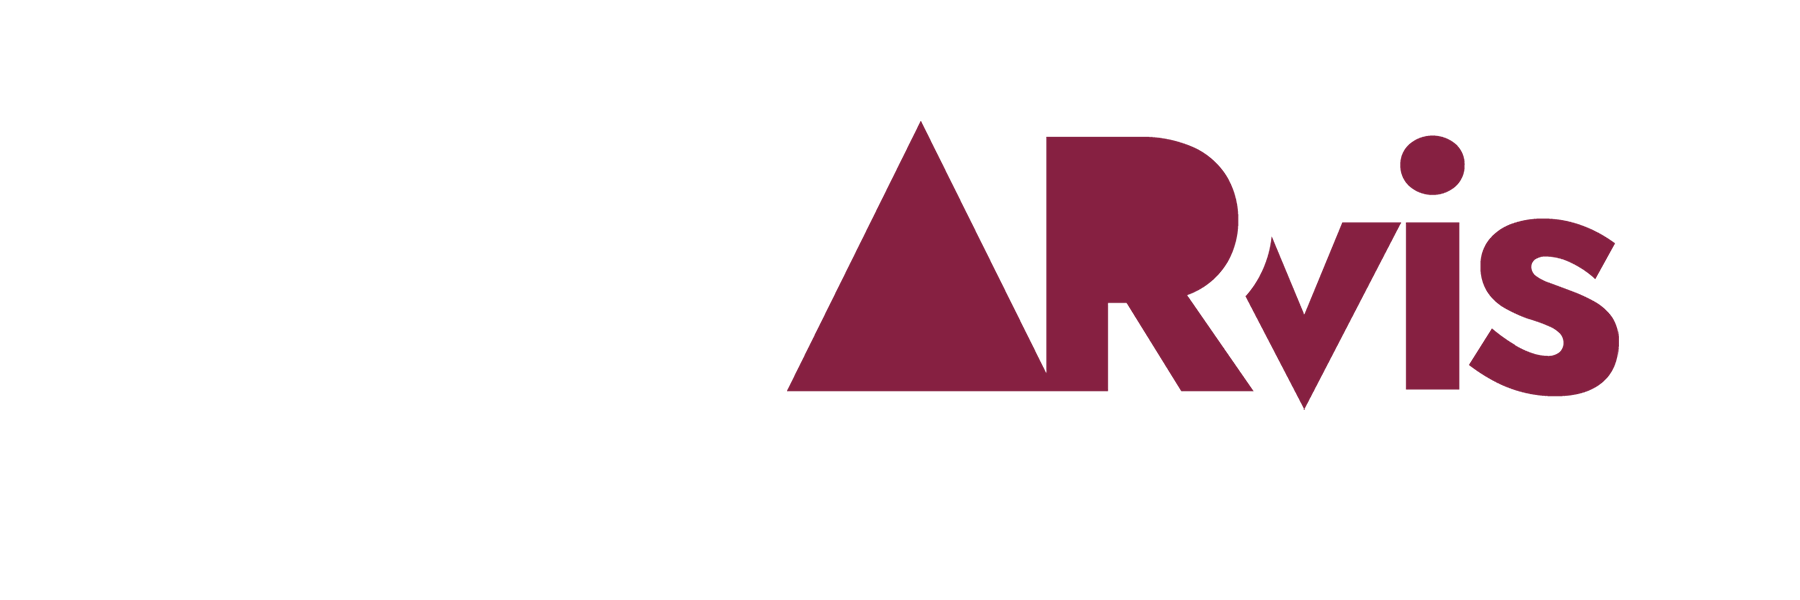 brand identity hub